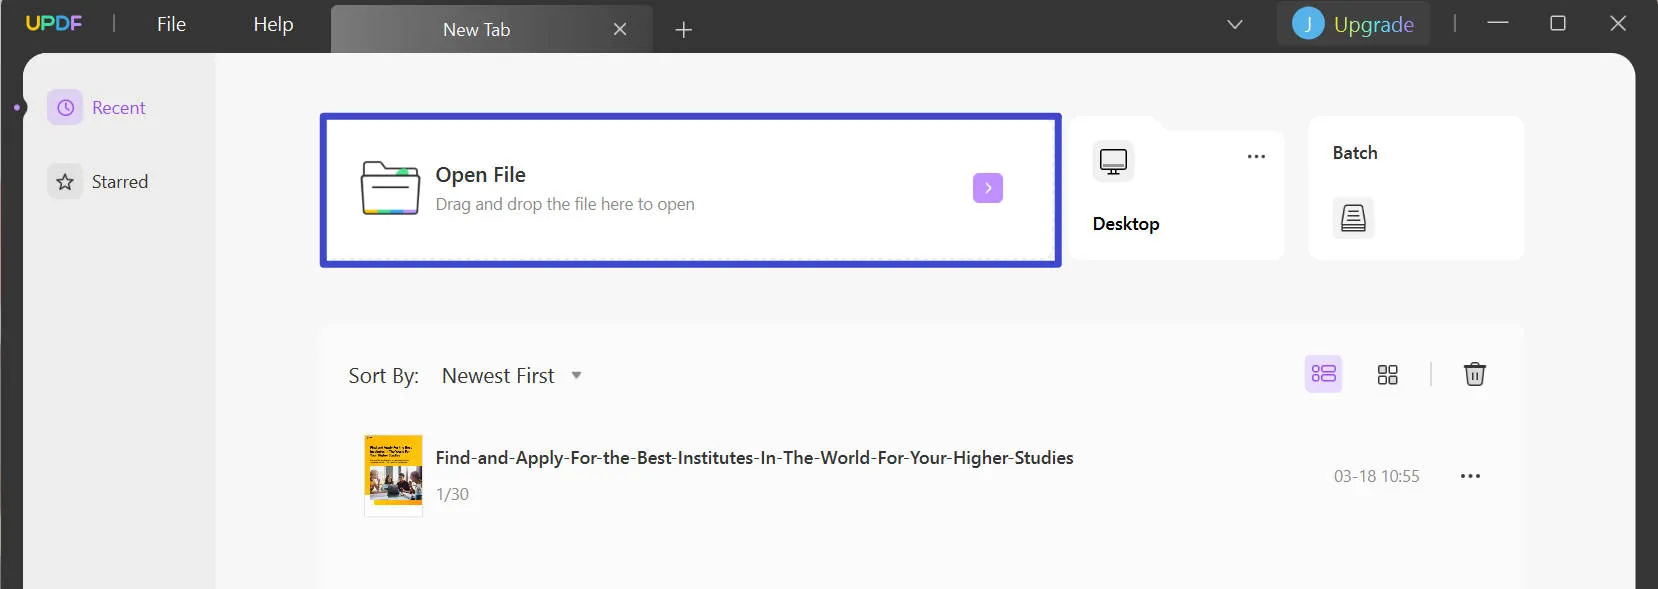 select open file tab in editing pdf